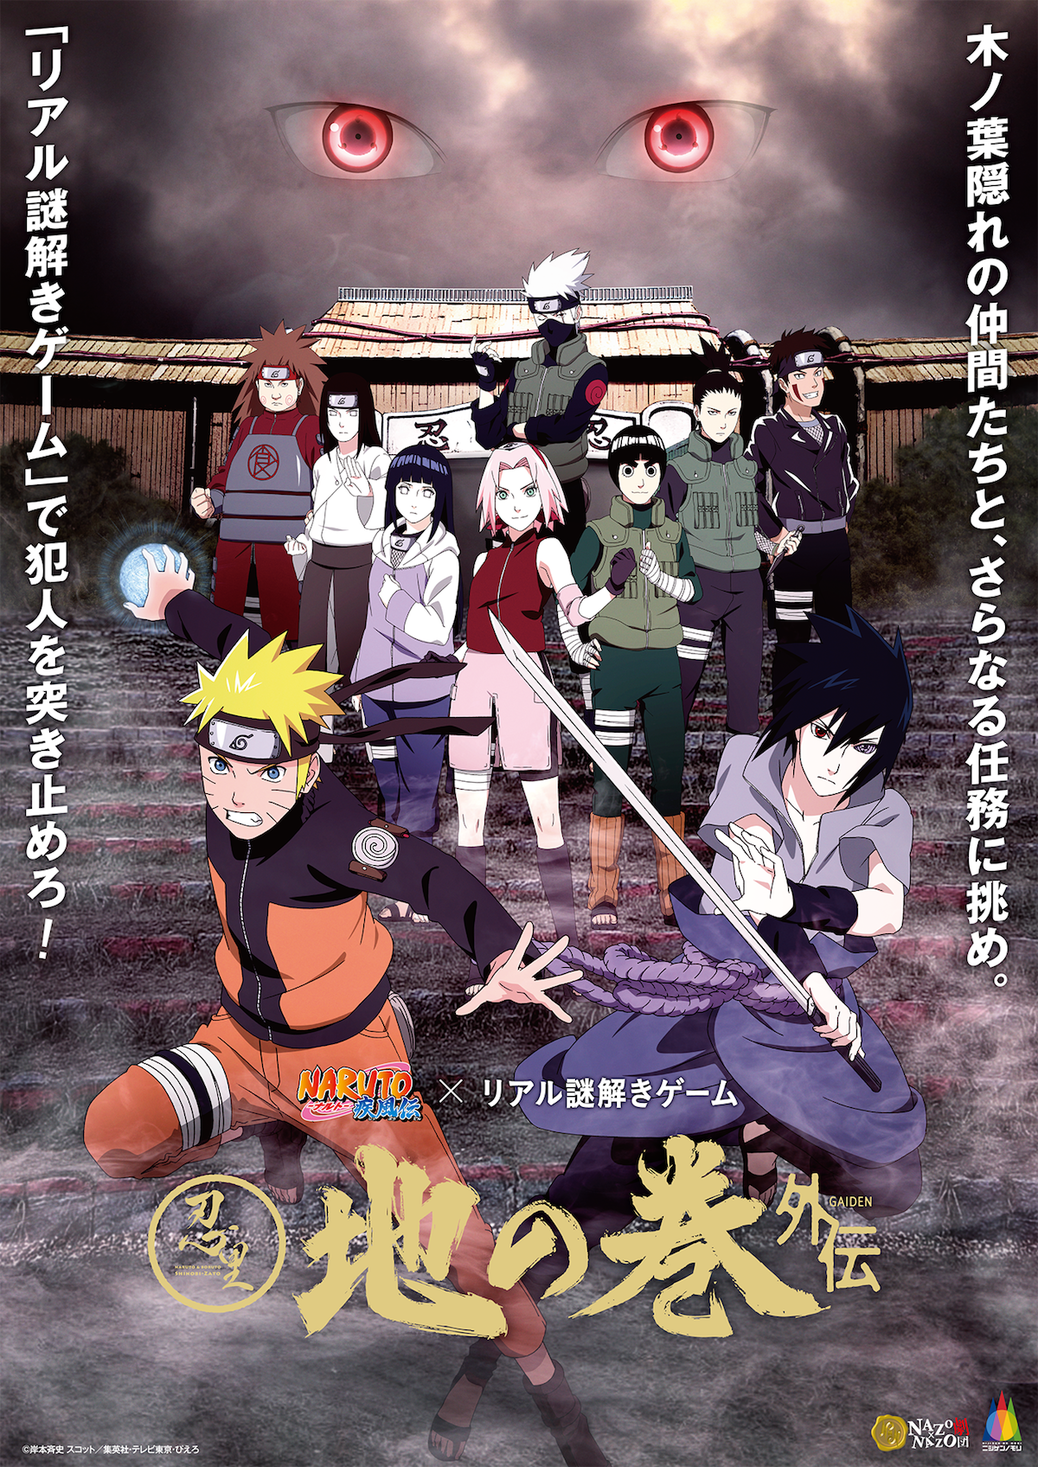 アニメ Naruto ナルト の世界観を再現したテーマエリアを周遊 リアル謎解き ゲーム9月14日からニジゲンノモリにて開催 Narutoファン必見 登場人物になる没入型 イベント限定ストーリー 株式会社ハレガケのプレスリリース